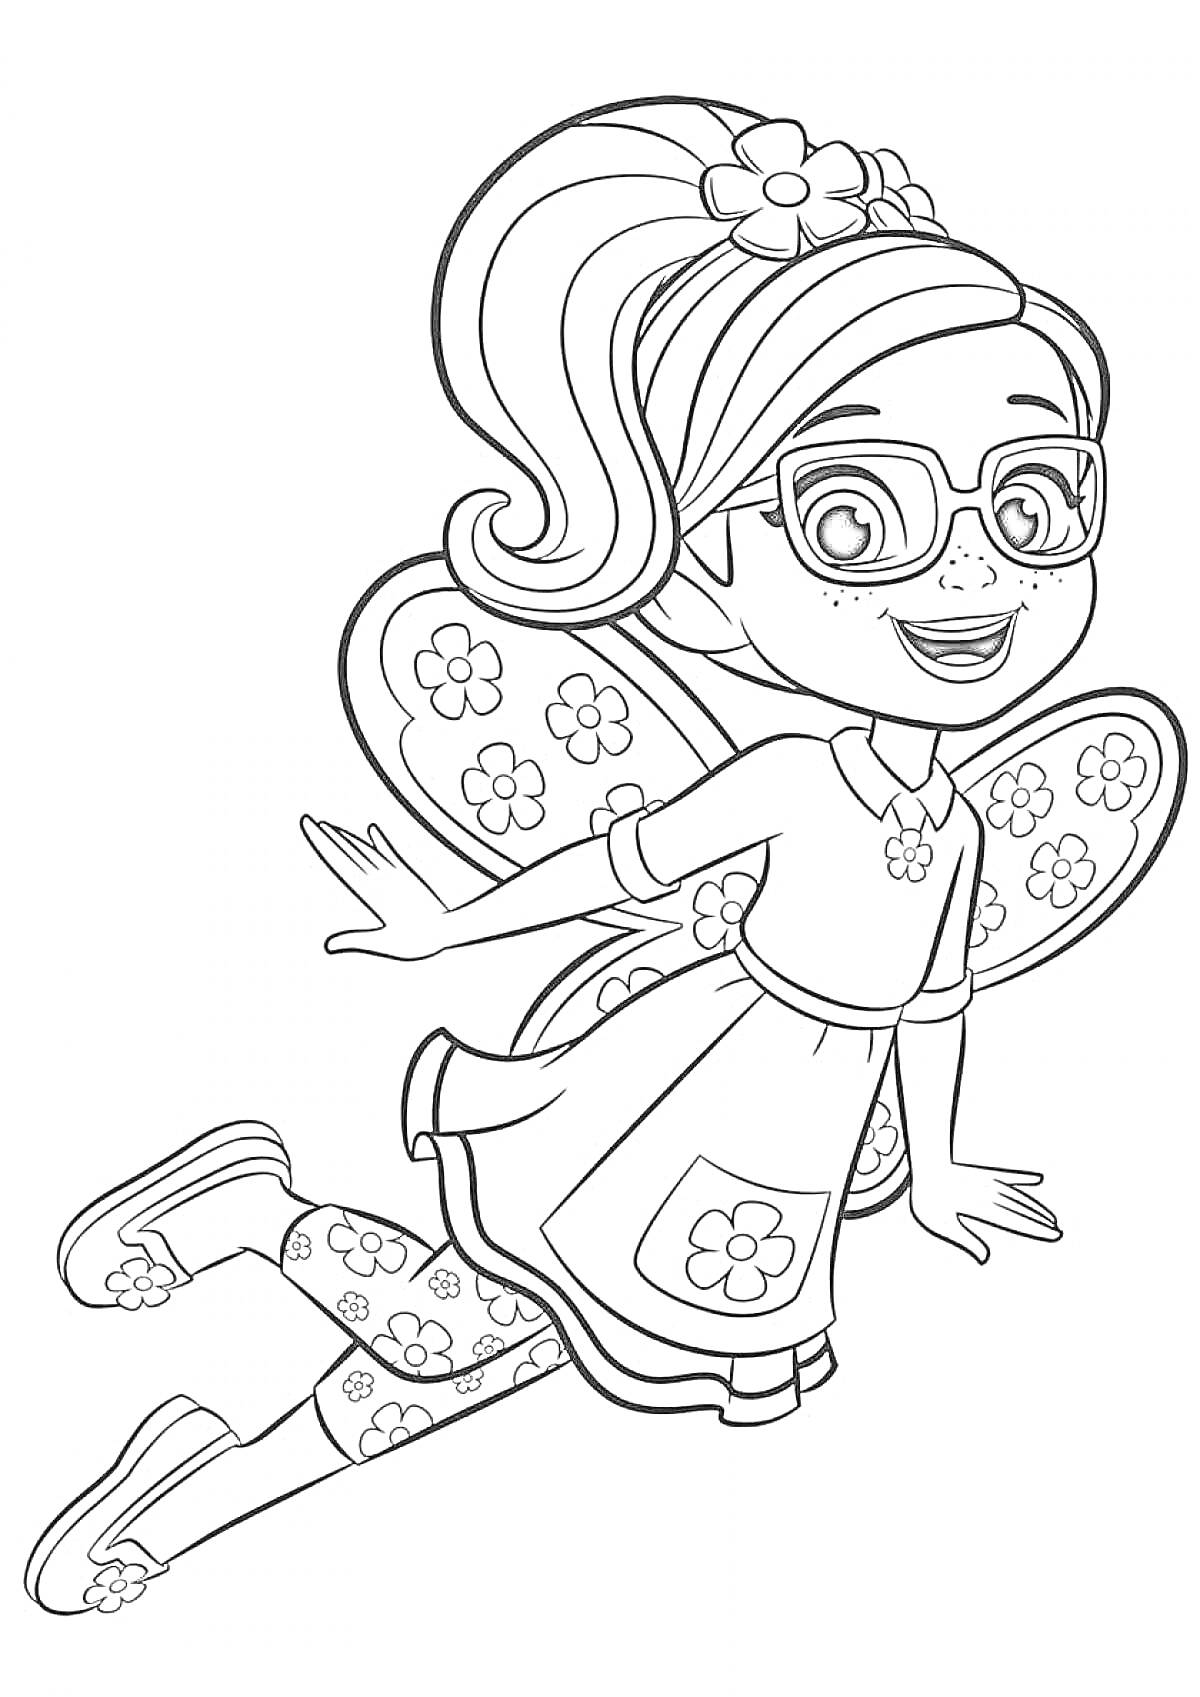 Раскраска Девочка-супергерой с очками и крыльями